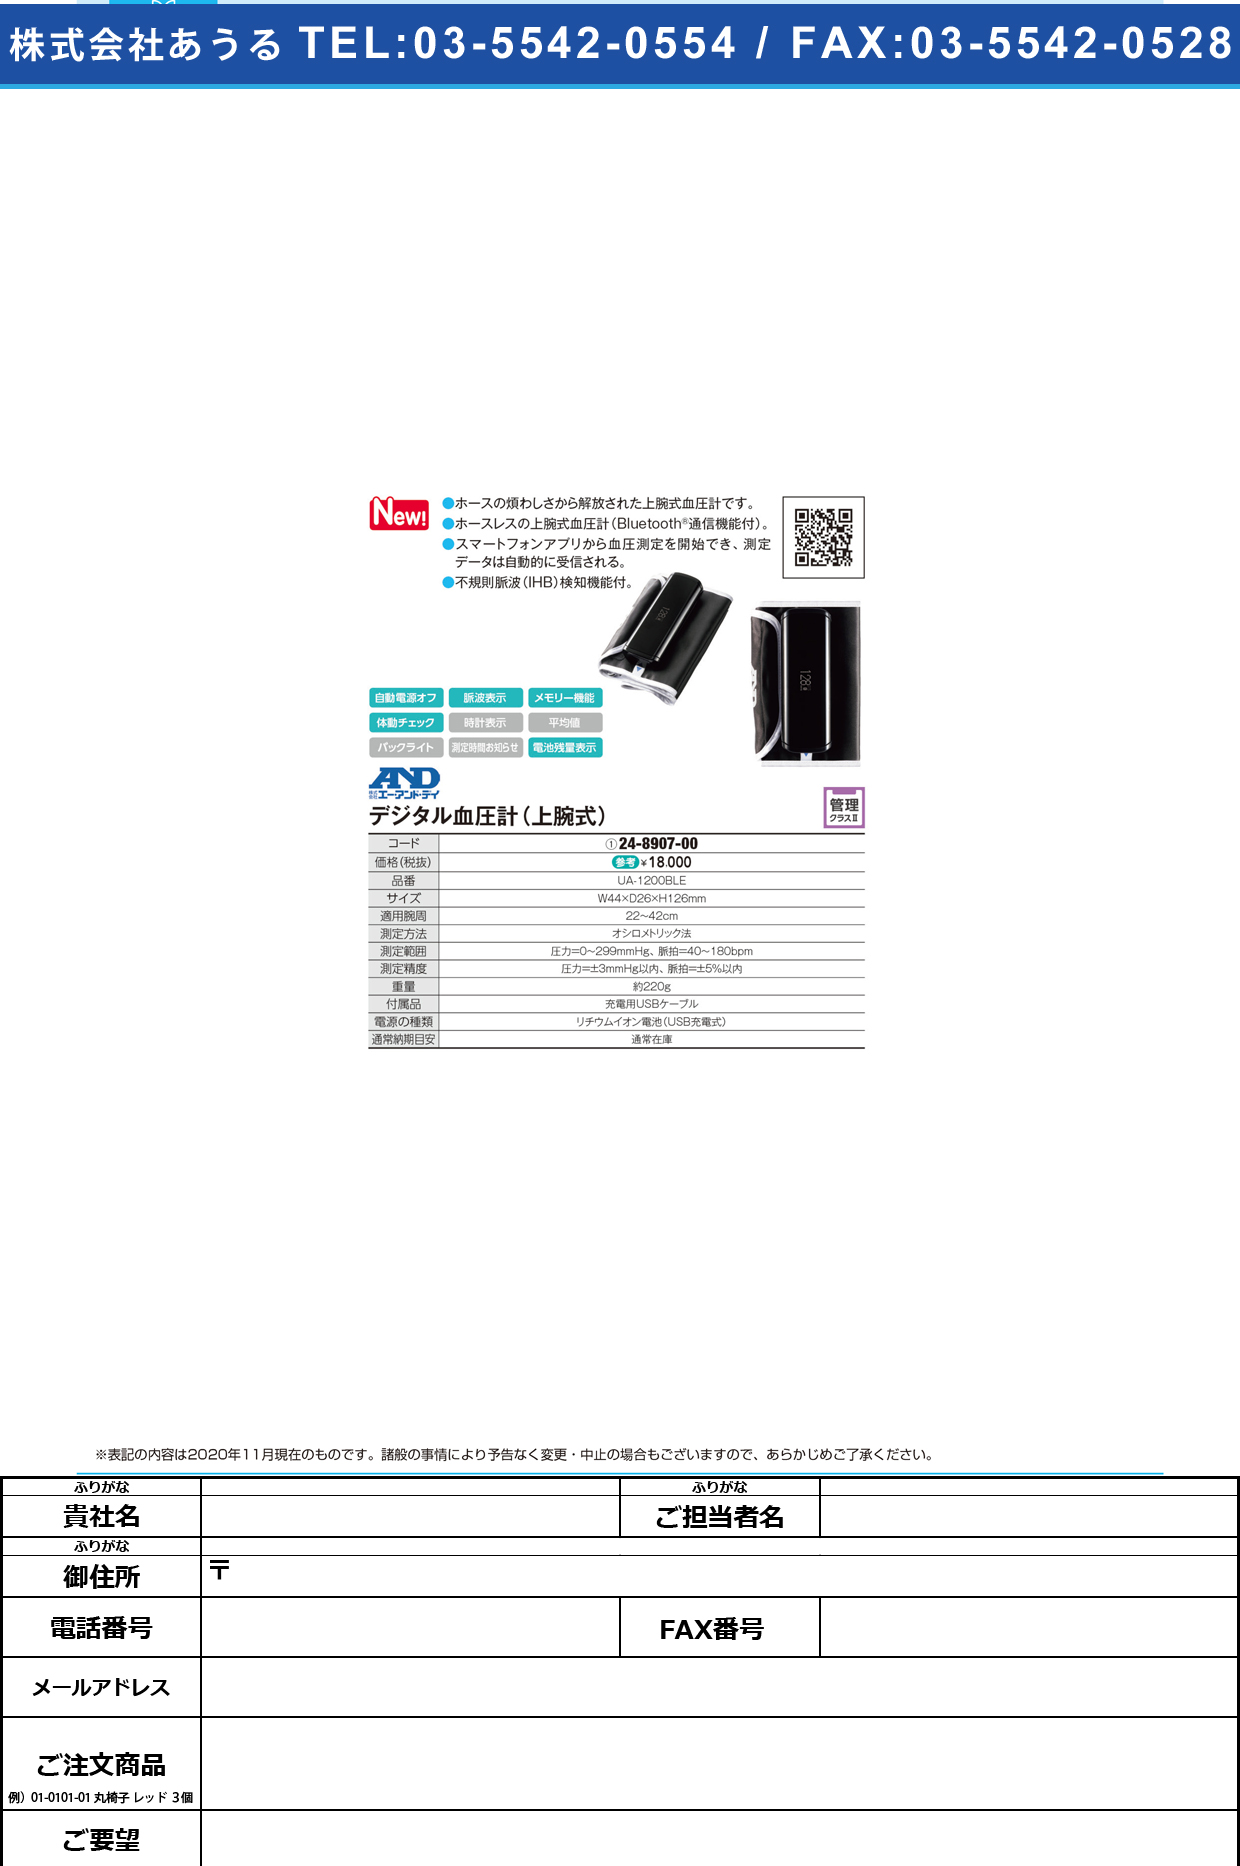 上腕式ホースレス血圧計 UA-1200BLEUA-1200BLE(24-8907-00)【エー・アンド・デイ】(販売単位:1)